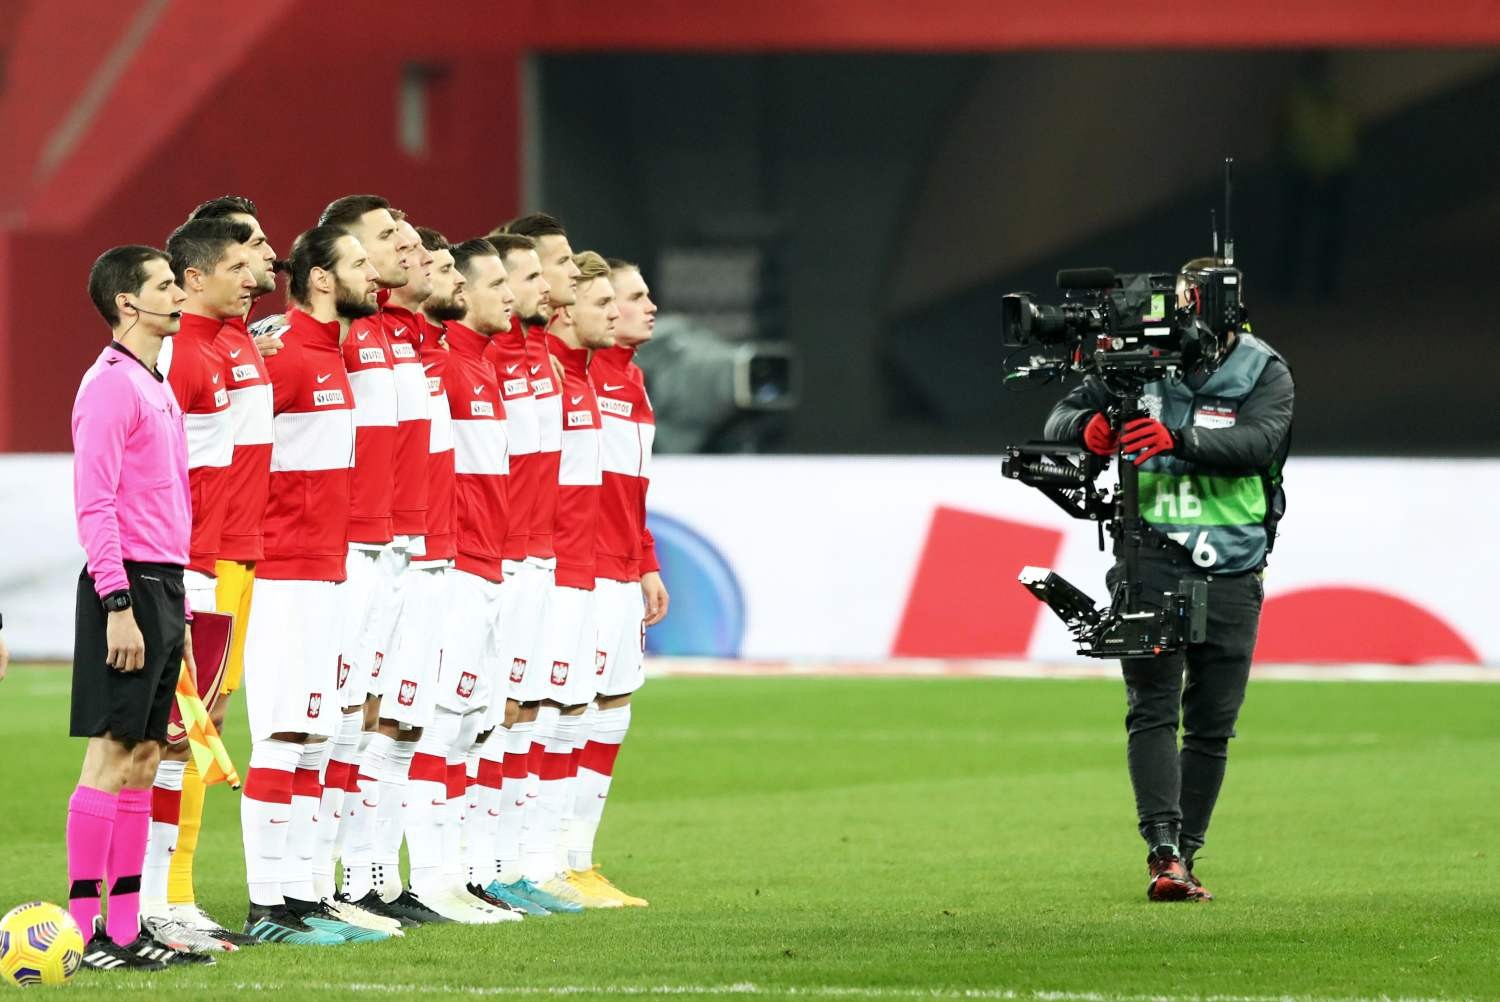 Reprezentacja Polski nie rozegra meczów EURO 2020 w Dublinie?!